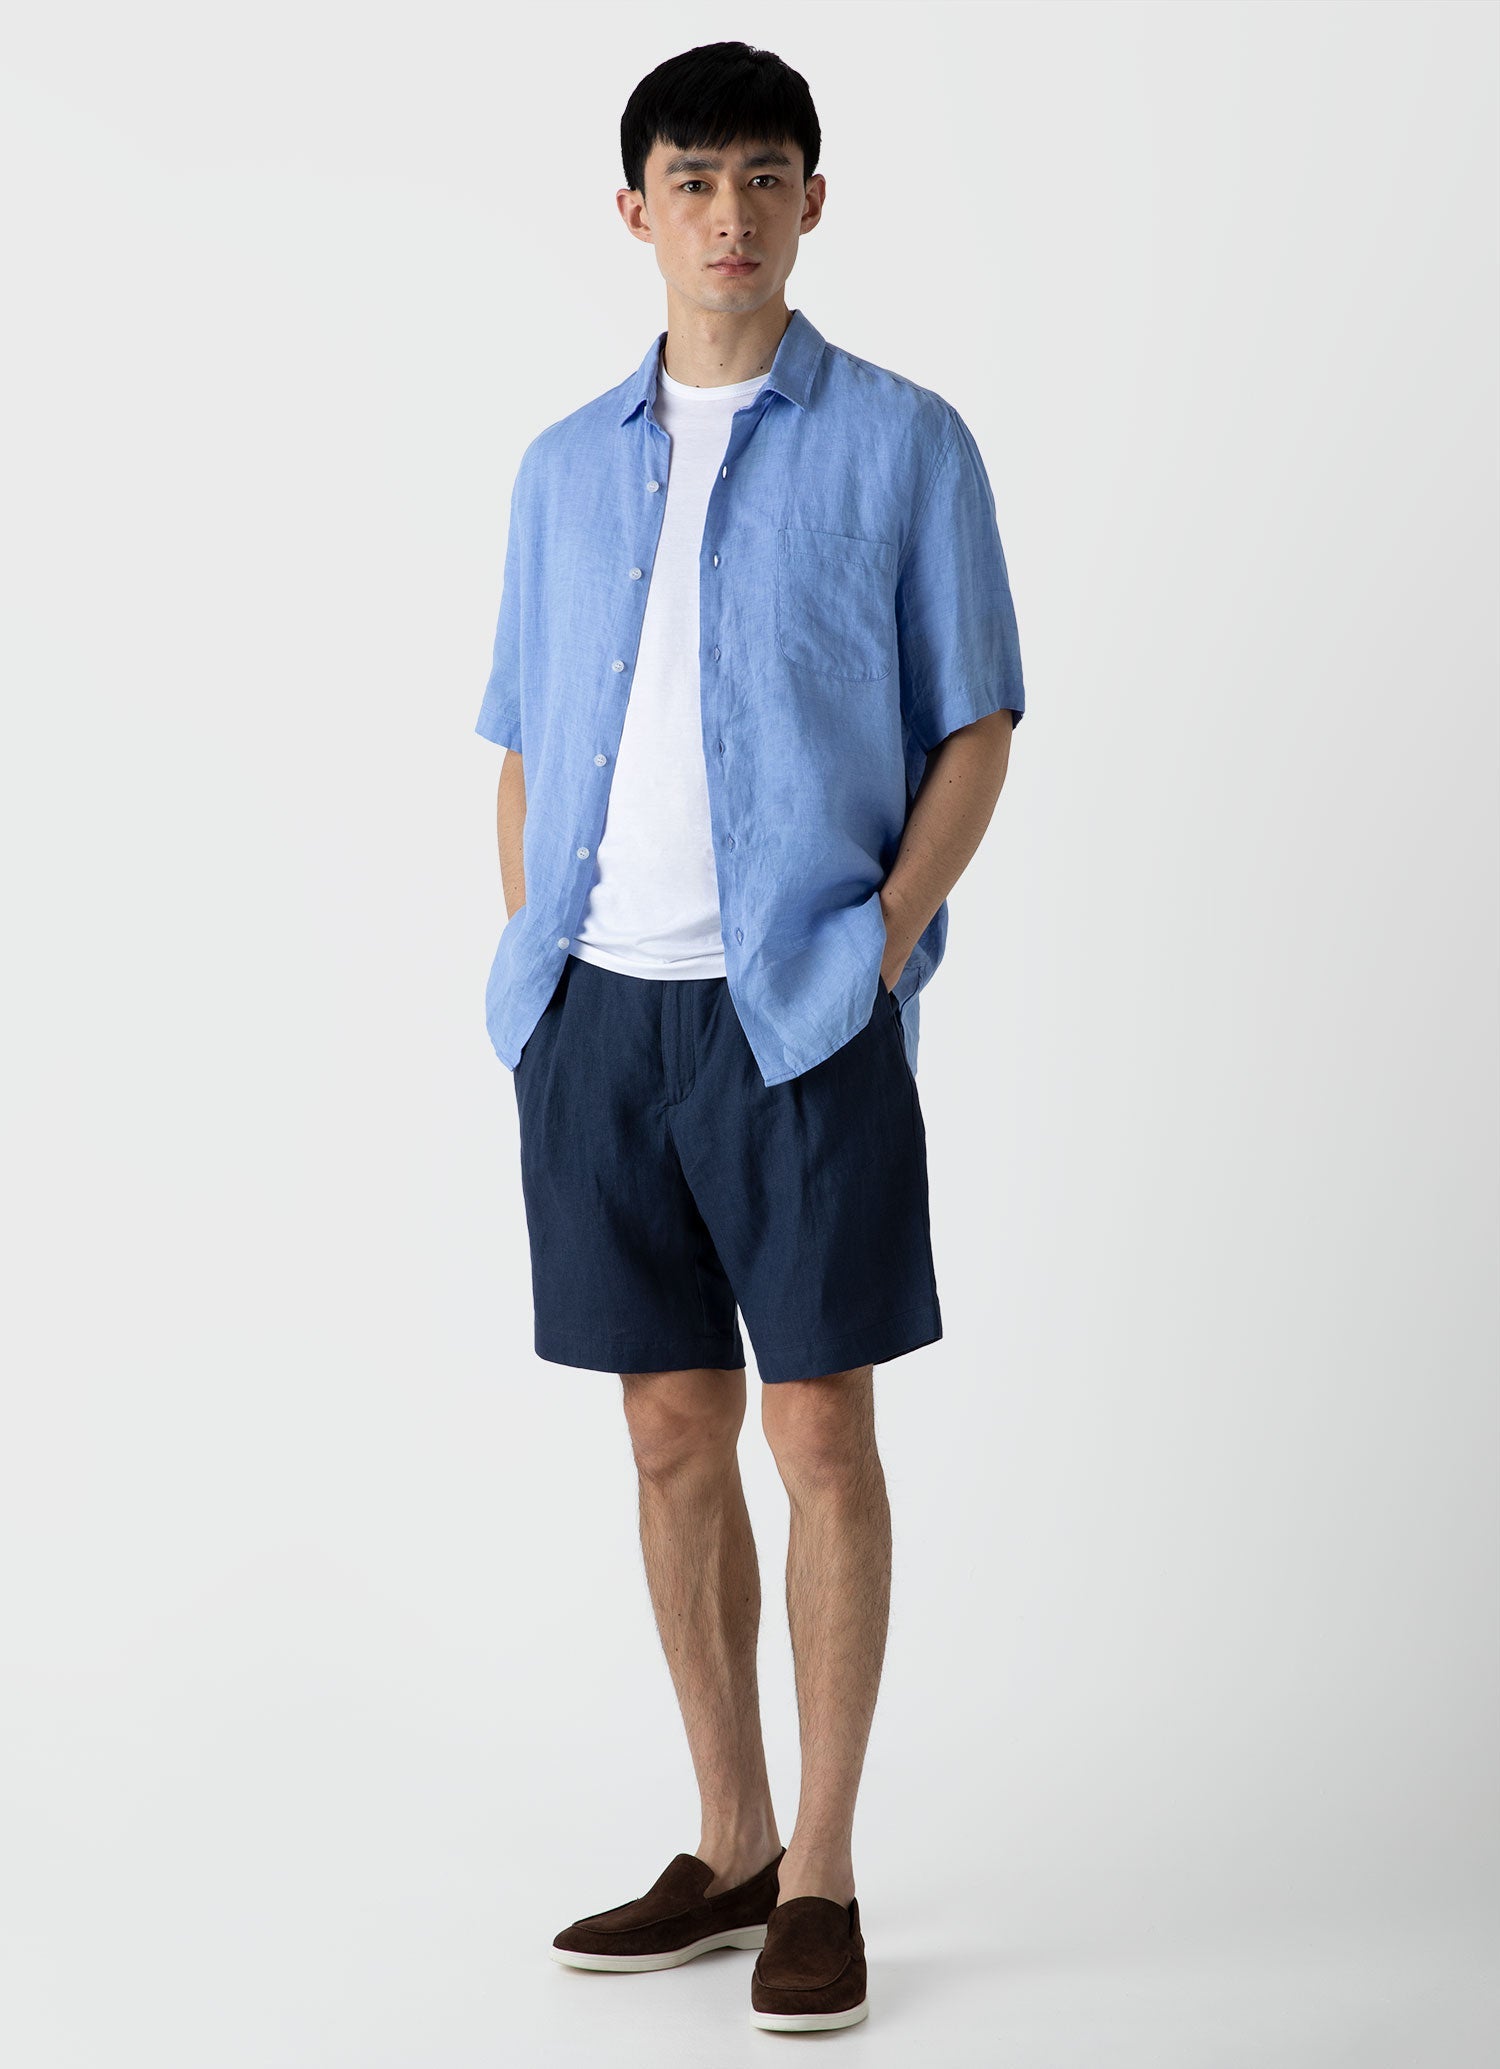 Men's Short Sleeve Linen Shirt in Cool Blue